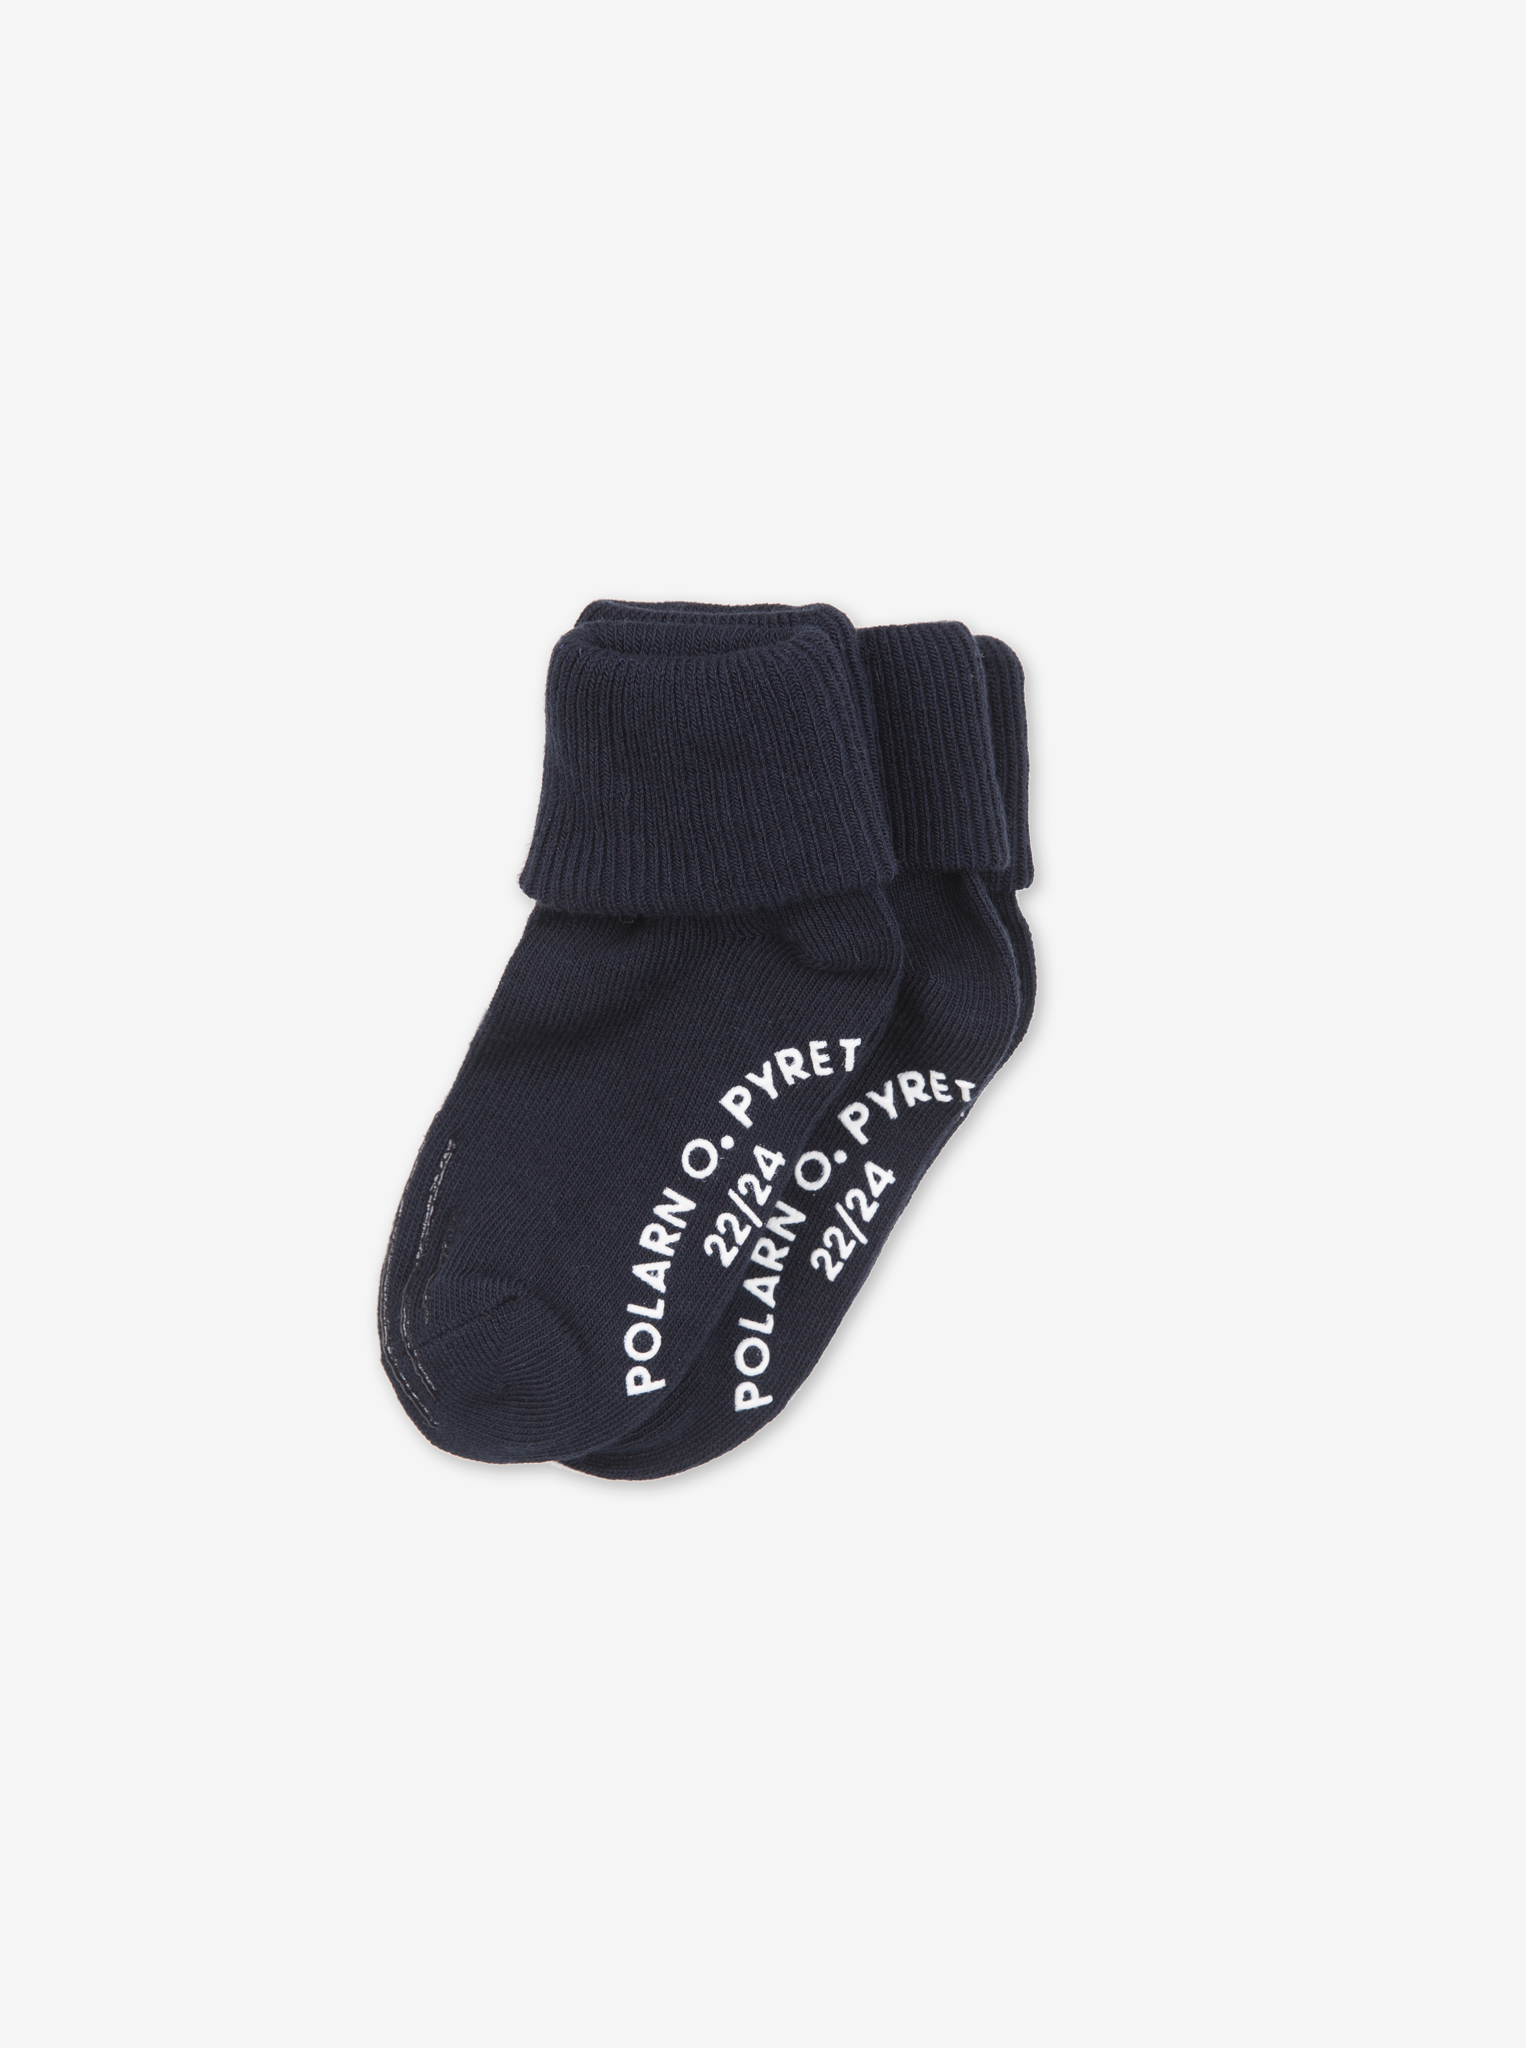 2 Pack Antislip Baby Crawler Socks